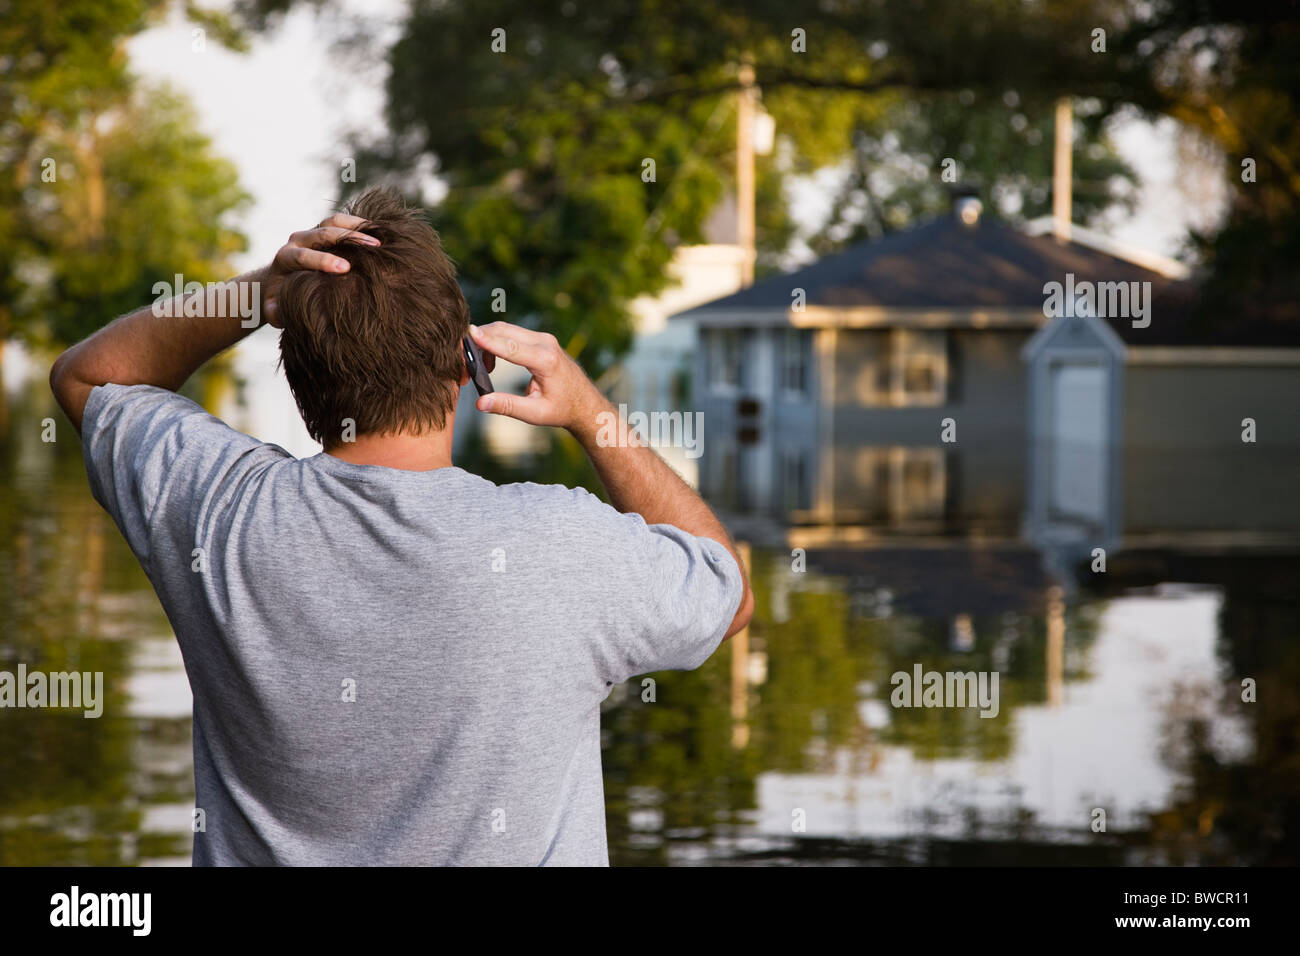 États-unis, Illinois, Chillicothe, Mid adult man talking on phone, vue arrière Banque D'Images